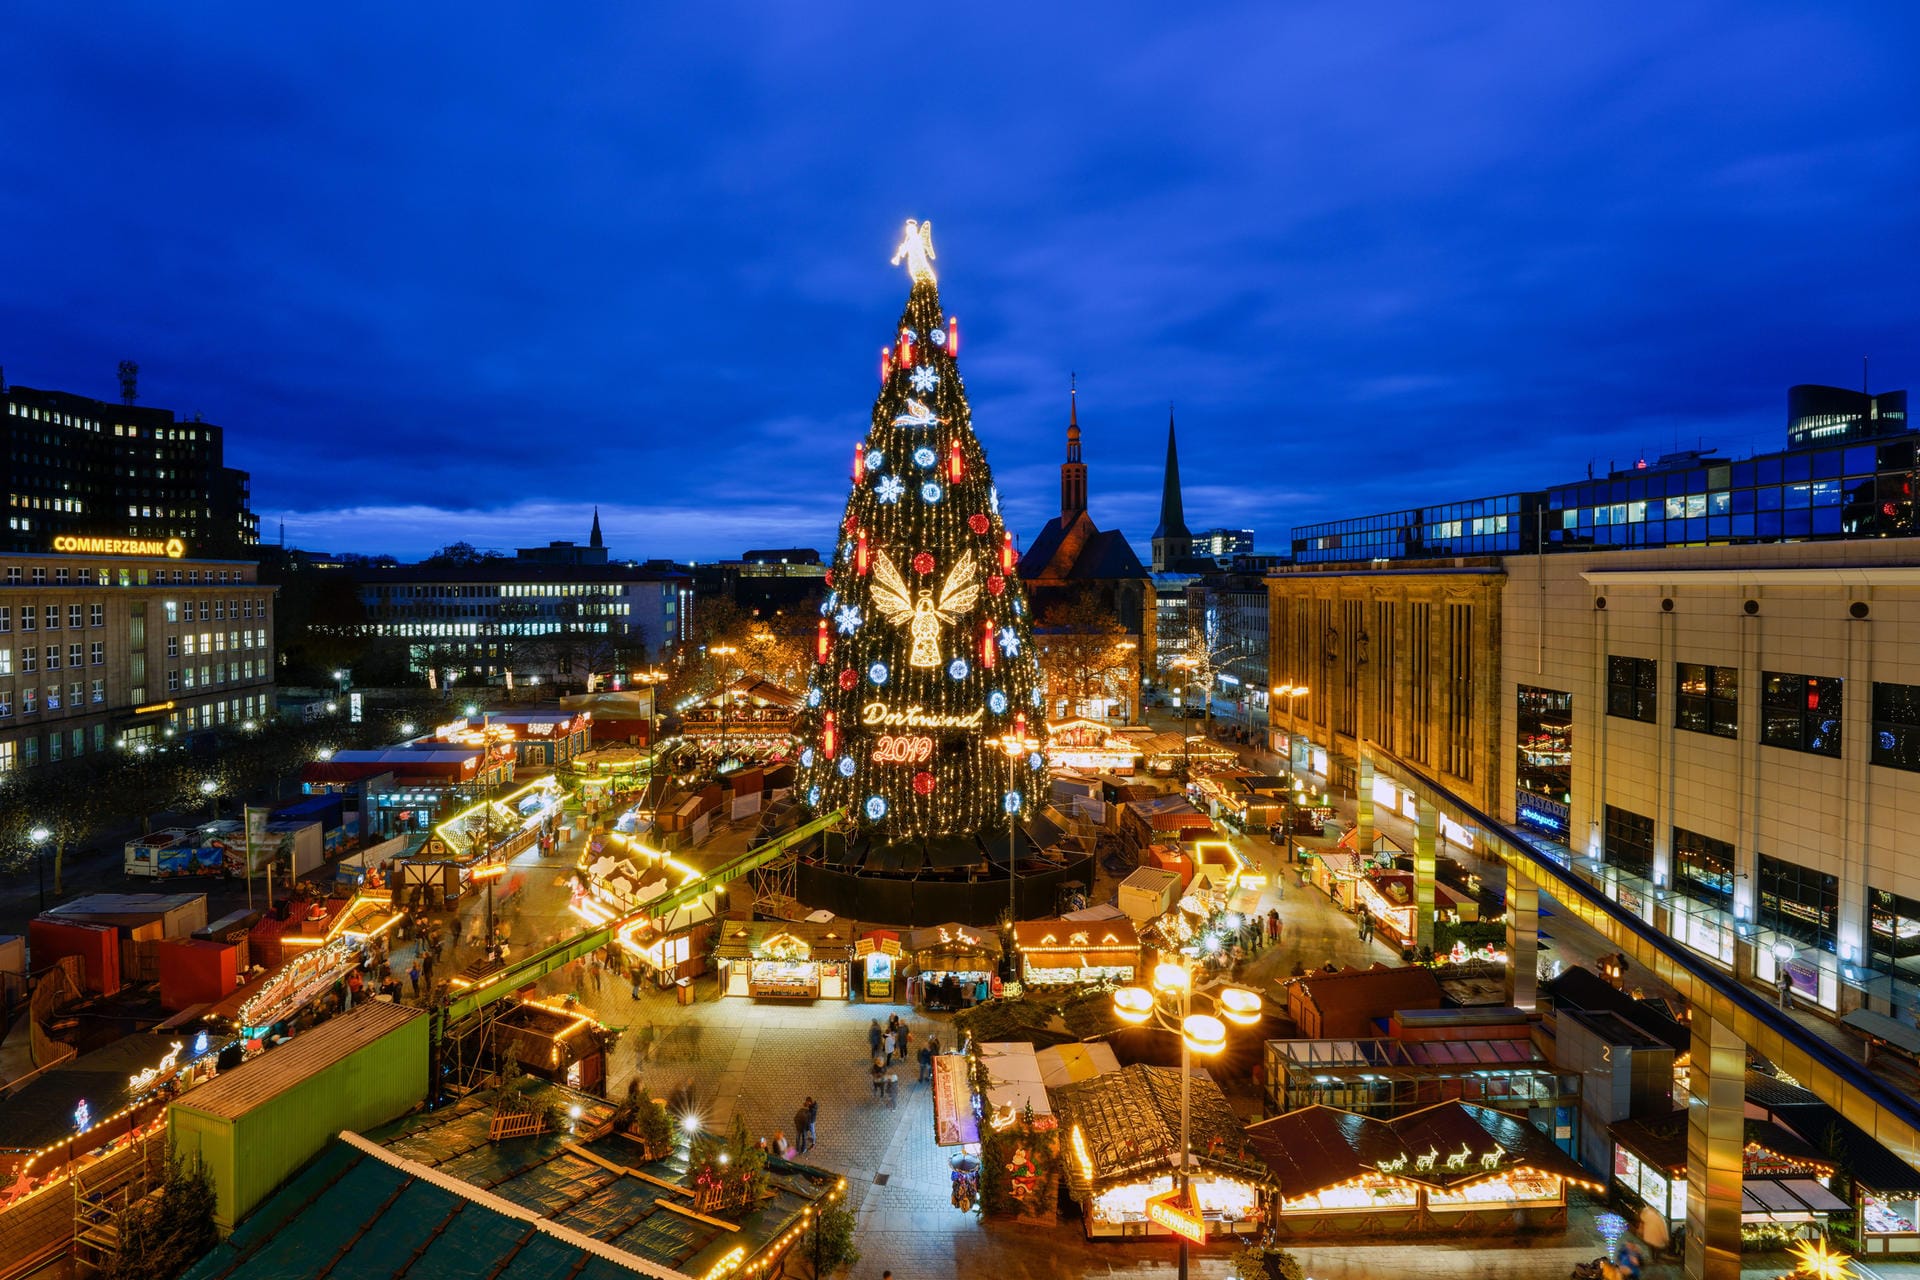 Weihnachtsbaum Dortmund: Insgesamt 1.700 Fichten sind in dem größten Weihnachtsbaum der Welt verarbeitet.